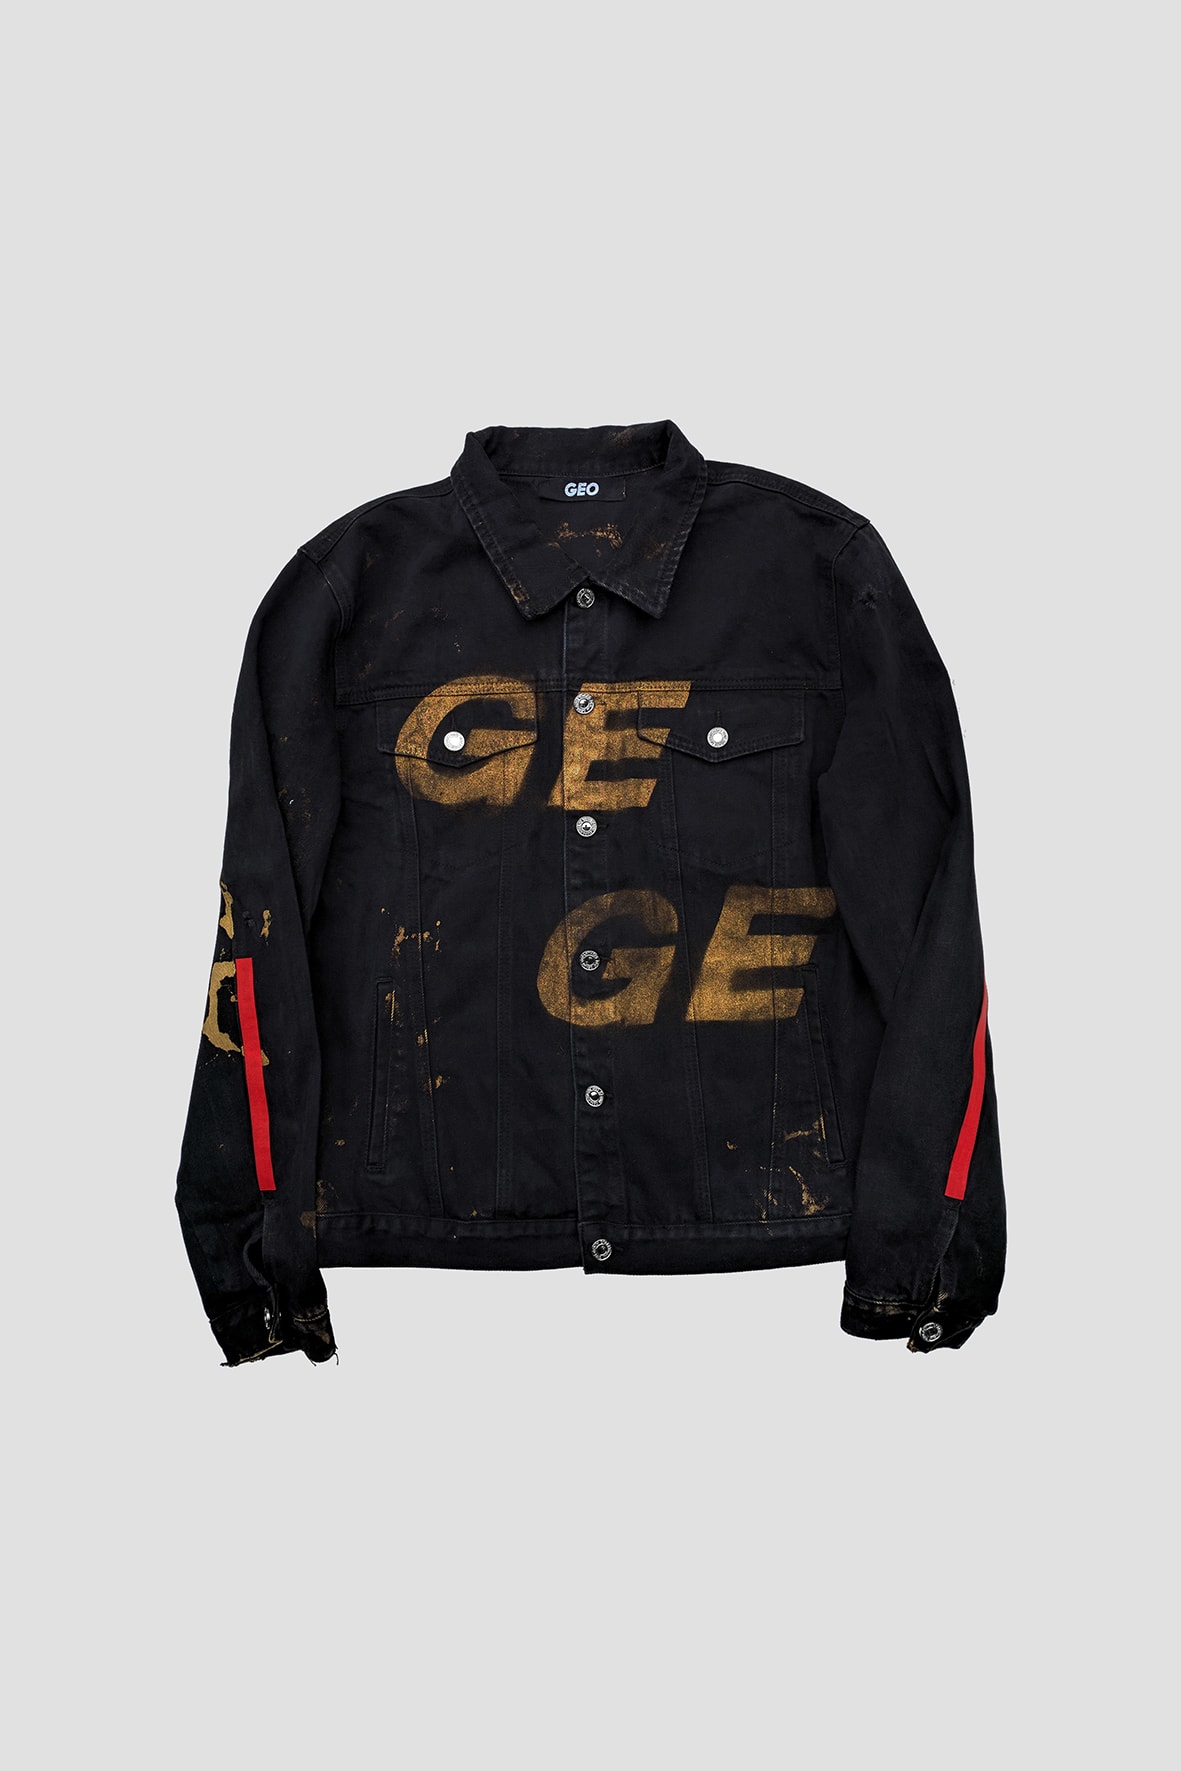 GEO Exclusive Unique Denim Jackets at I.T. Apparels Hong Kong